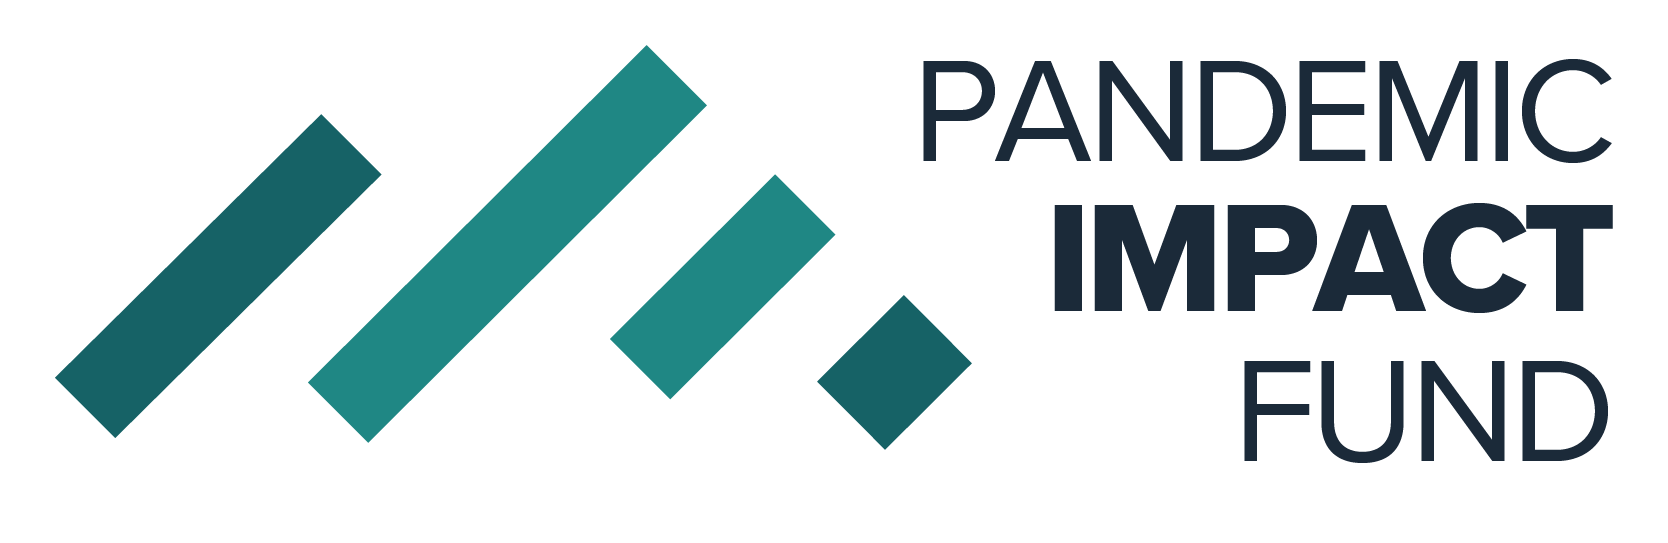 Pandemic Impact Fund logo